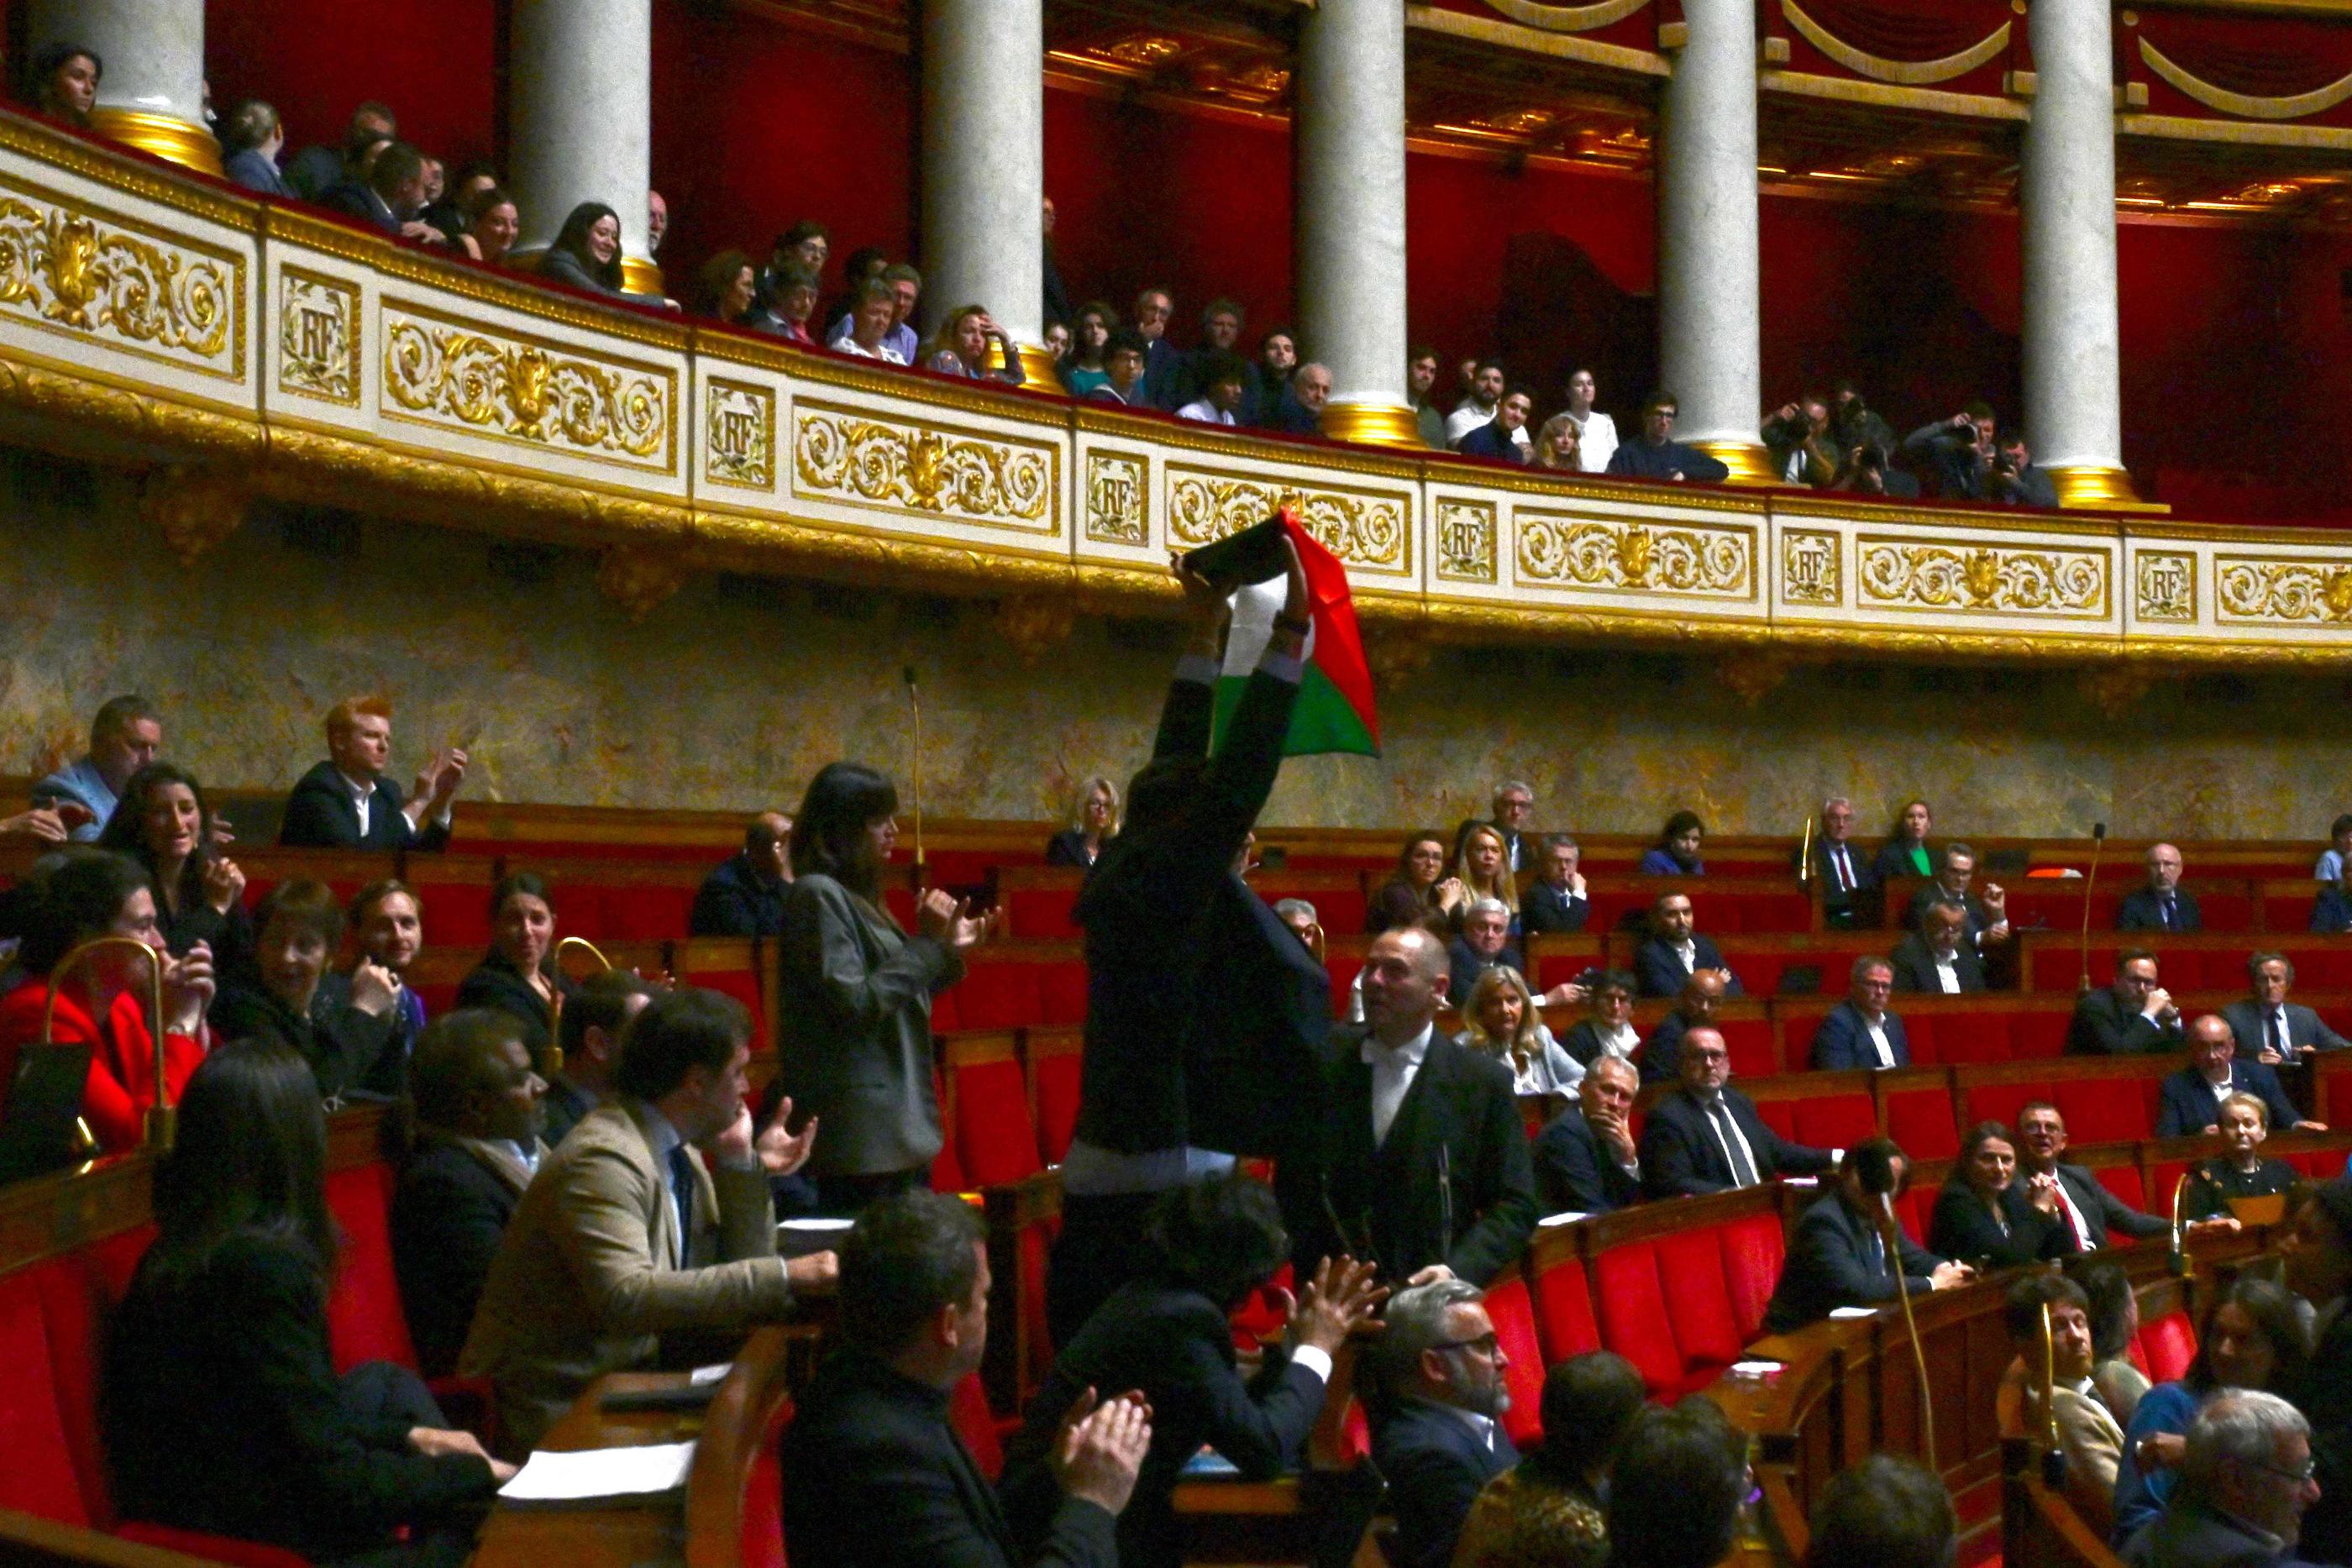 En pleine séance de questions aux gouvernement, le député LFI Sébastien Delogu a brandi un drapeau palestinien. AFP/Miguel Medina